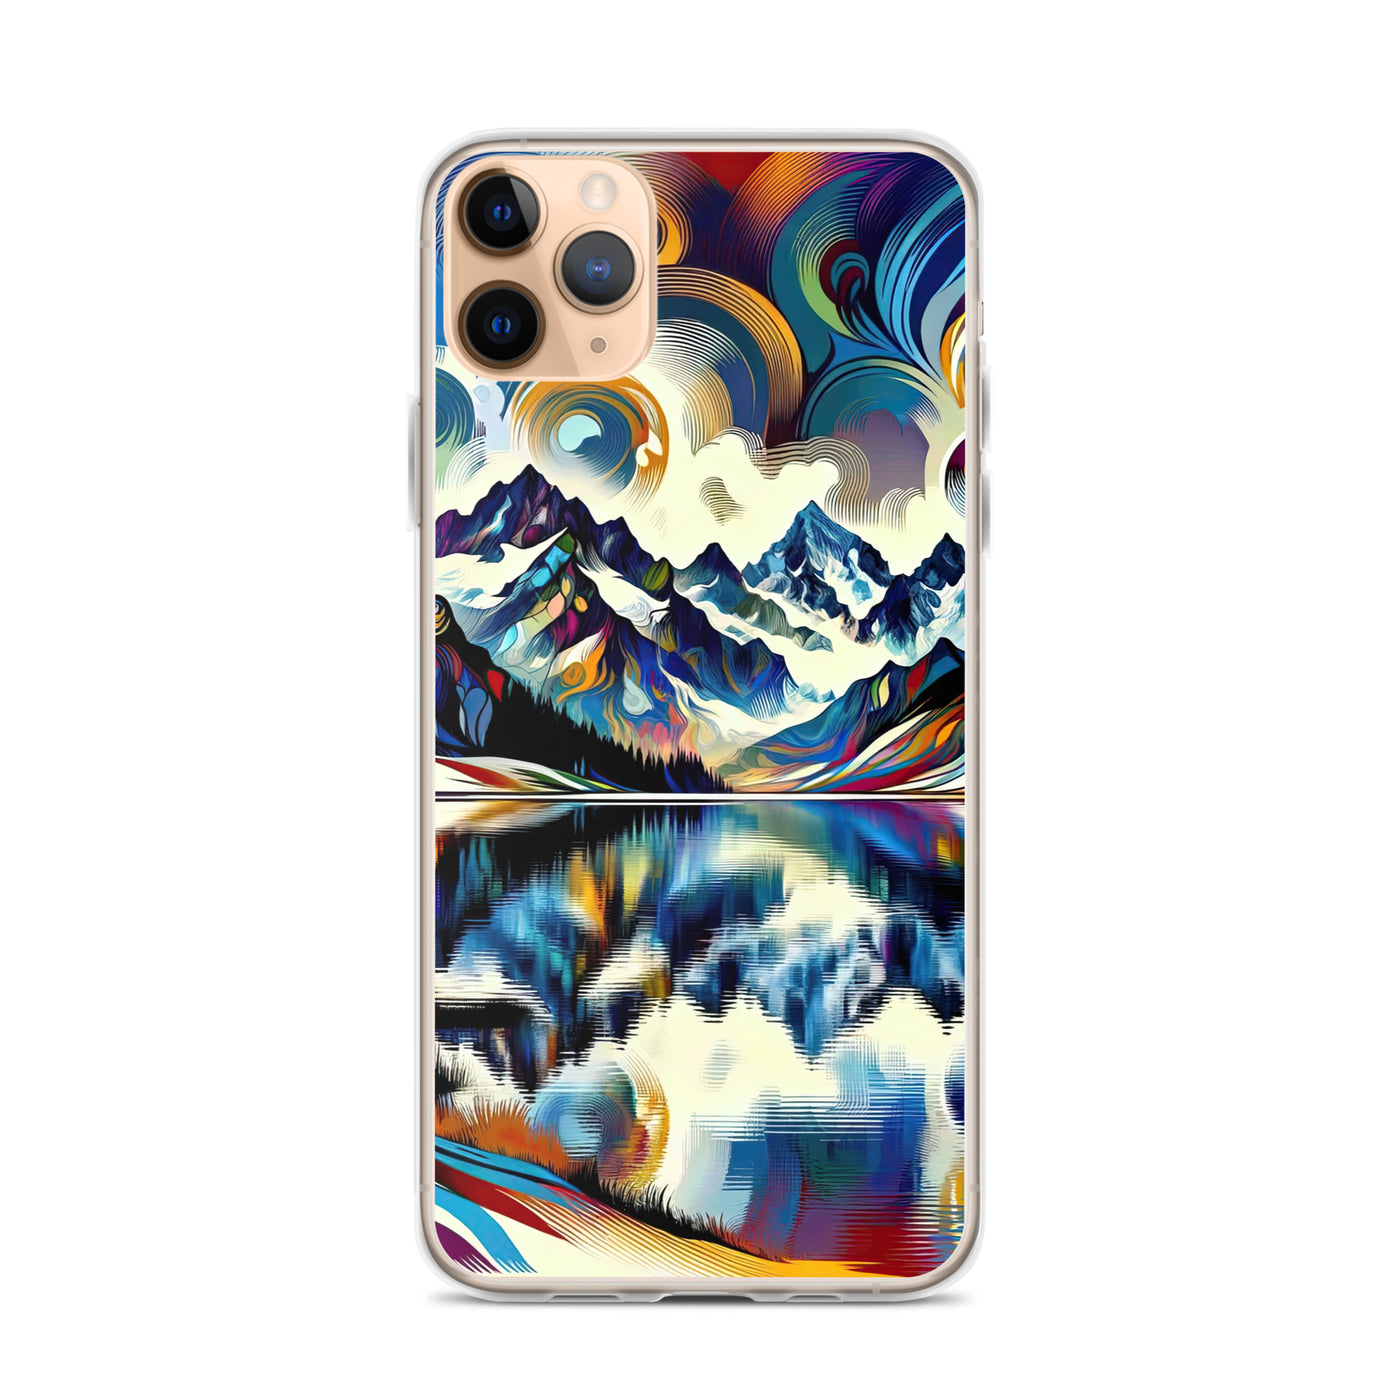 Alpensee im Zentrum eines abstrakt-expressionistischen Alpen-Kunstwerks - iPhone Schutzhülle (durchsichtig) berge xxx yyy zzz iPhone 11 Pro Max